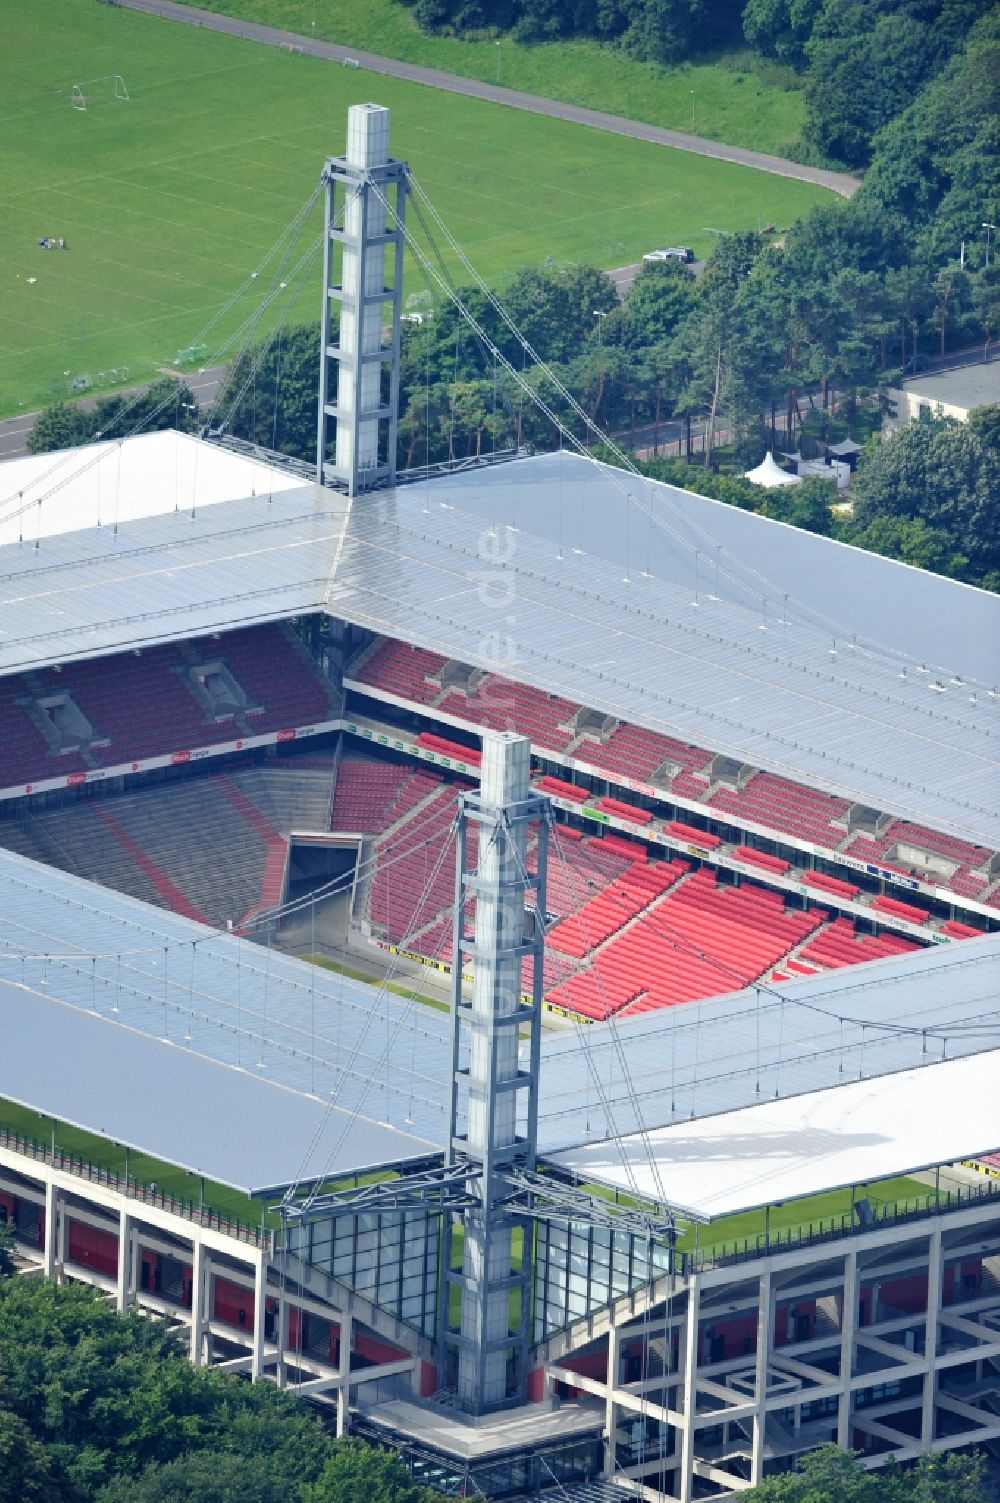 Luftbild Köln - Blick auf das Rhein Energie Stadion, die Heimspielstätte des 1. FC Köln, im Stadtteil Müngersdorf